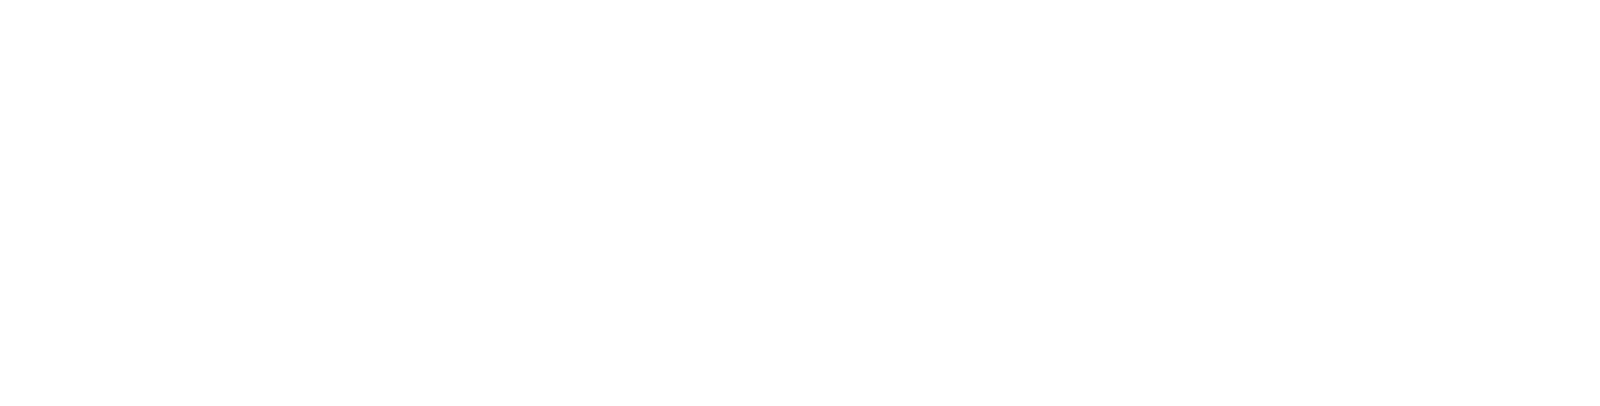 Logo PALMARA 11